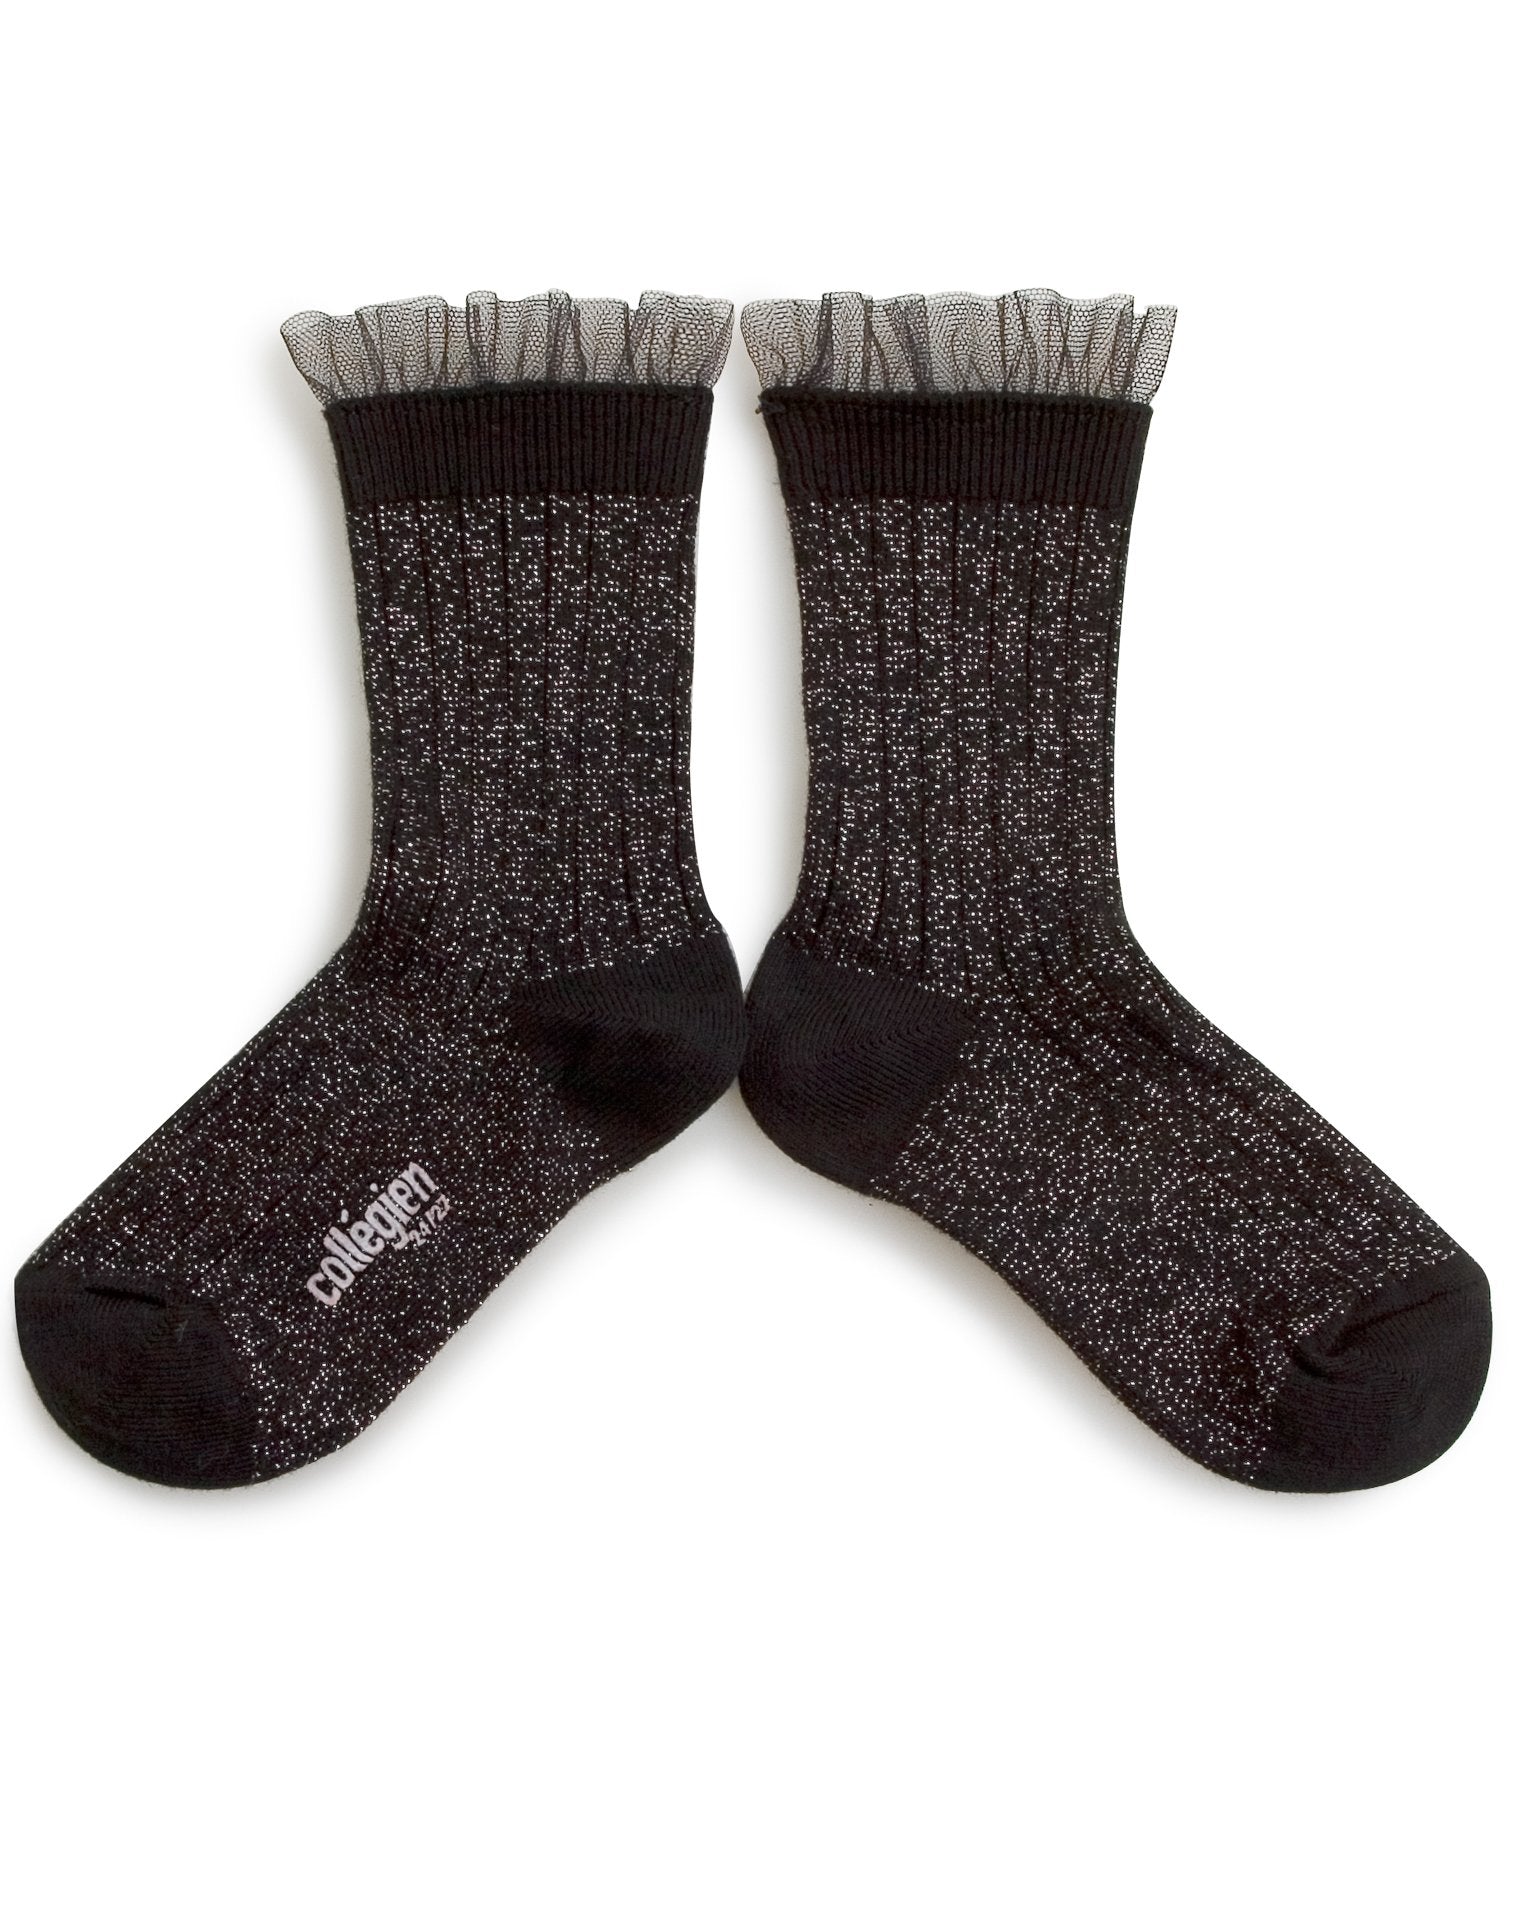 Little collegien accessories glittery tulle socks in noir de charbon